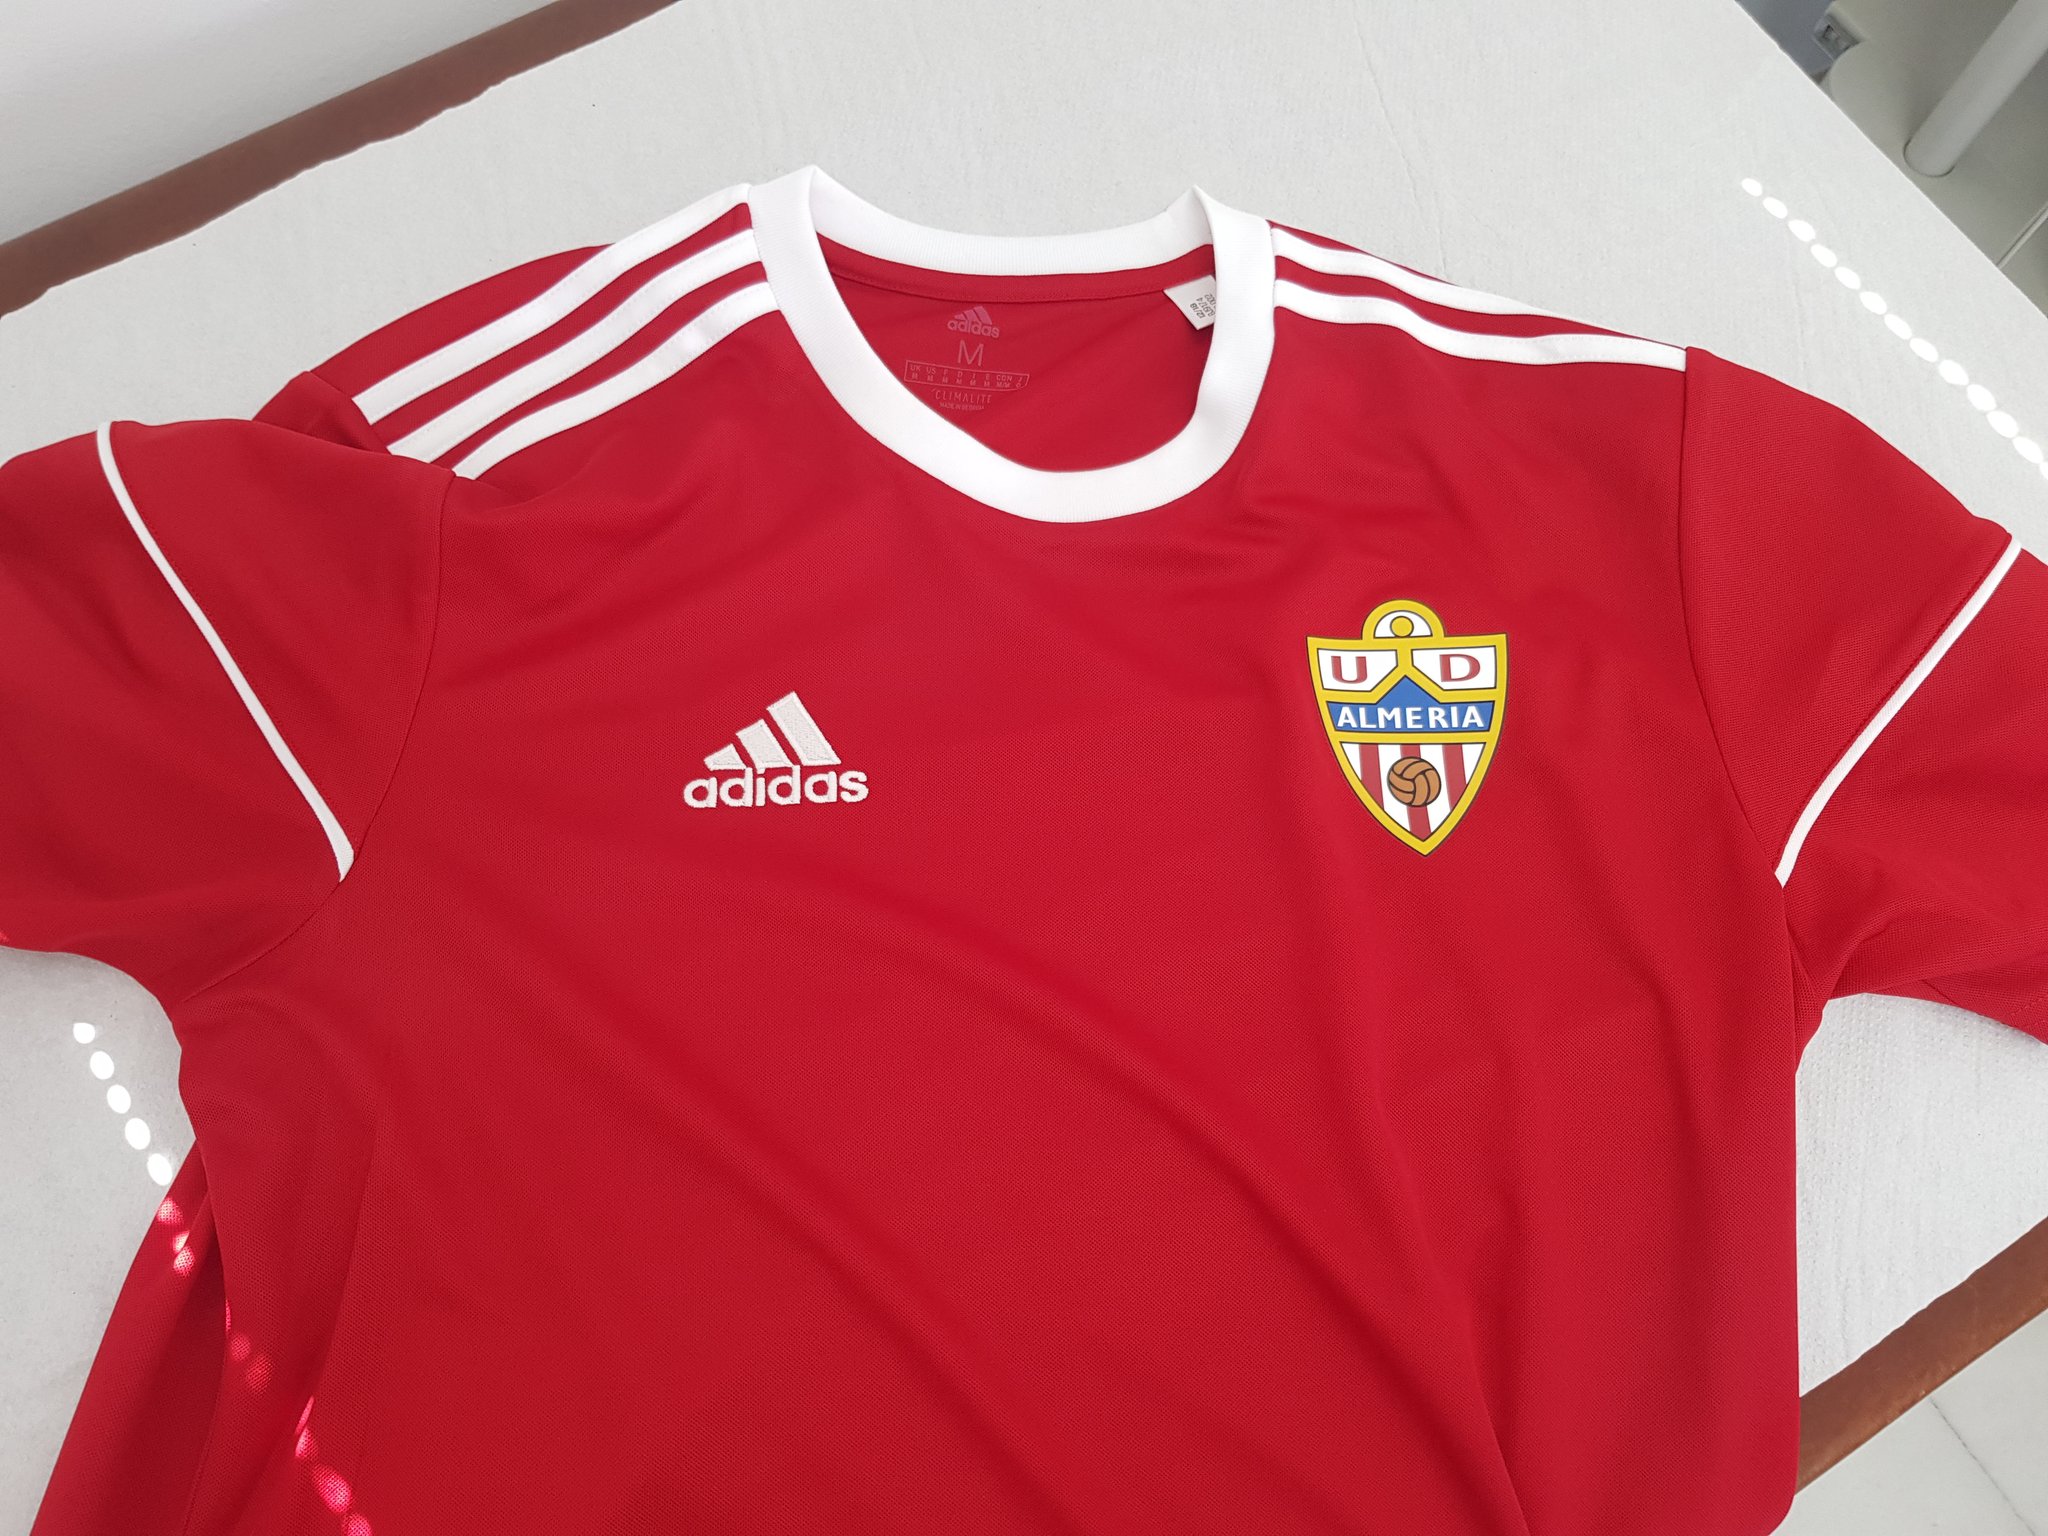 Auto Inducir Pantano La Voz Deportes al Twitter: "👌La camiseta de entrenamiento de este año  @U_D_Almeria https://t.co/yj1PnImwP0" / Twitter